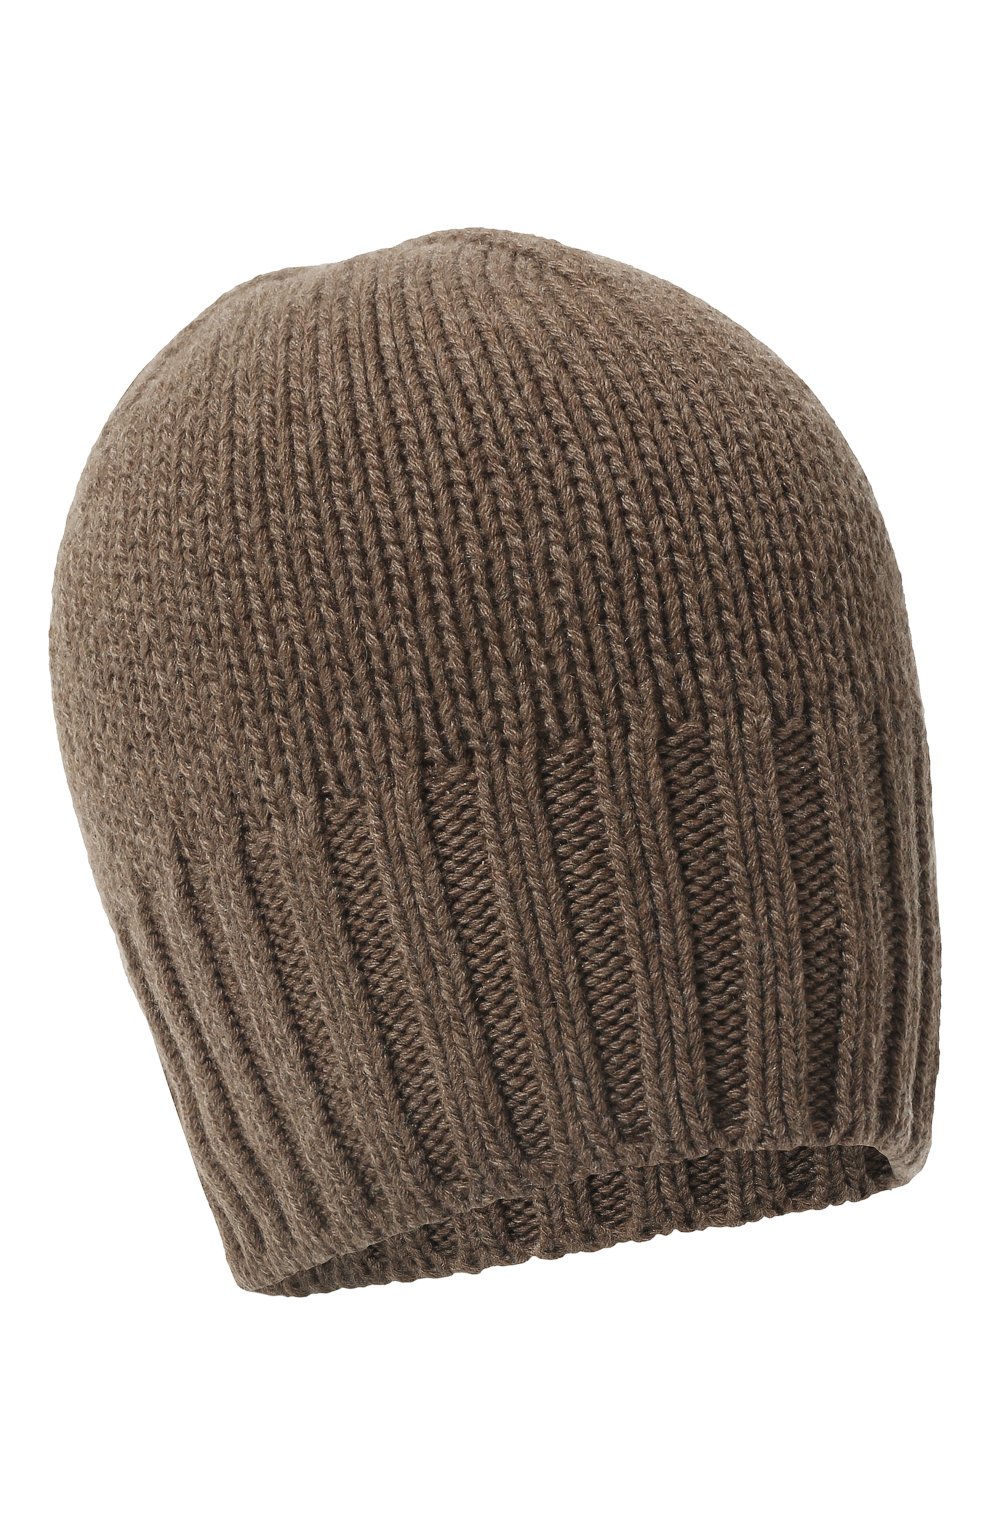 Мужская кашемировая шапка INVERNI коричневого цвета, арт. 4226 CM | Фото 1 (Материал: Текстиль, Кашемир, Шерсть; Кросс-КТ: Трикотаж)